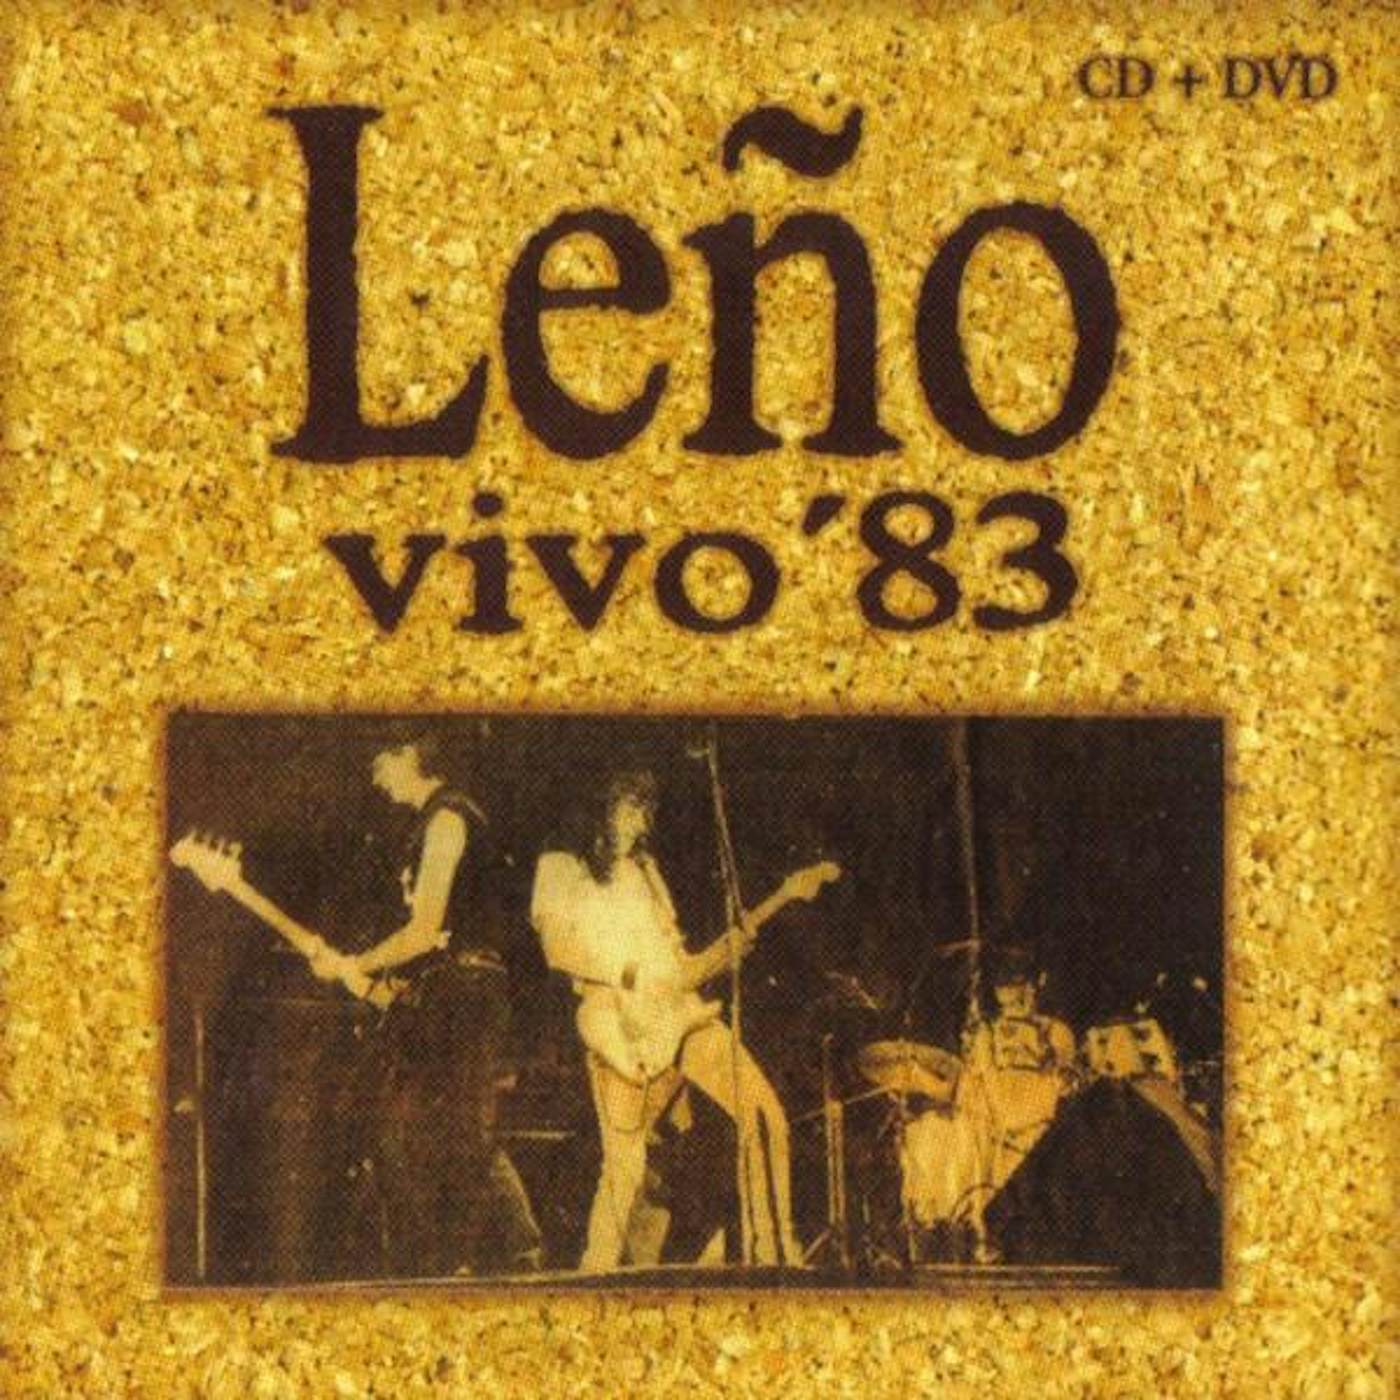 Leño VIVO 83 Vinyl Record